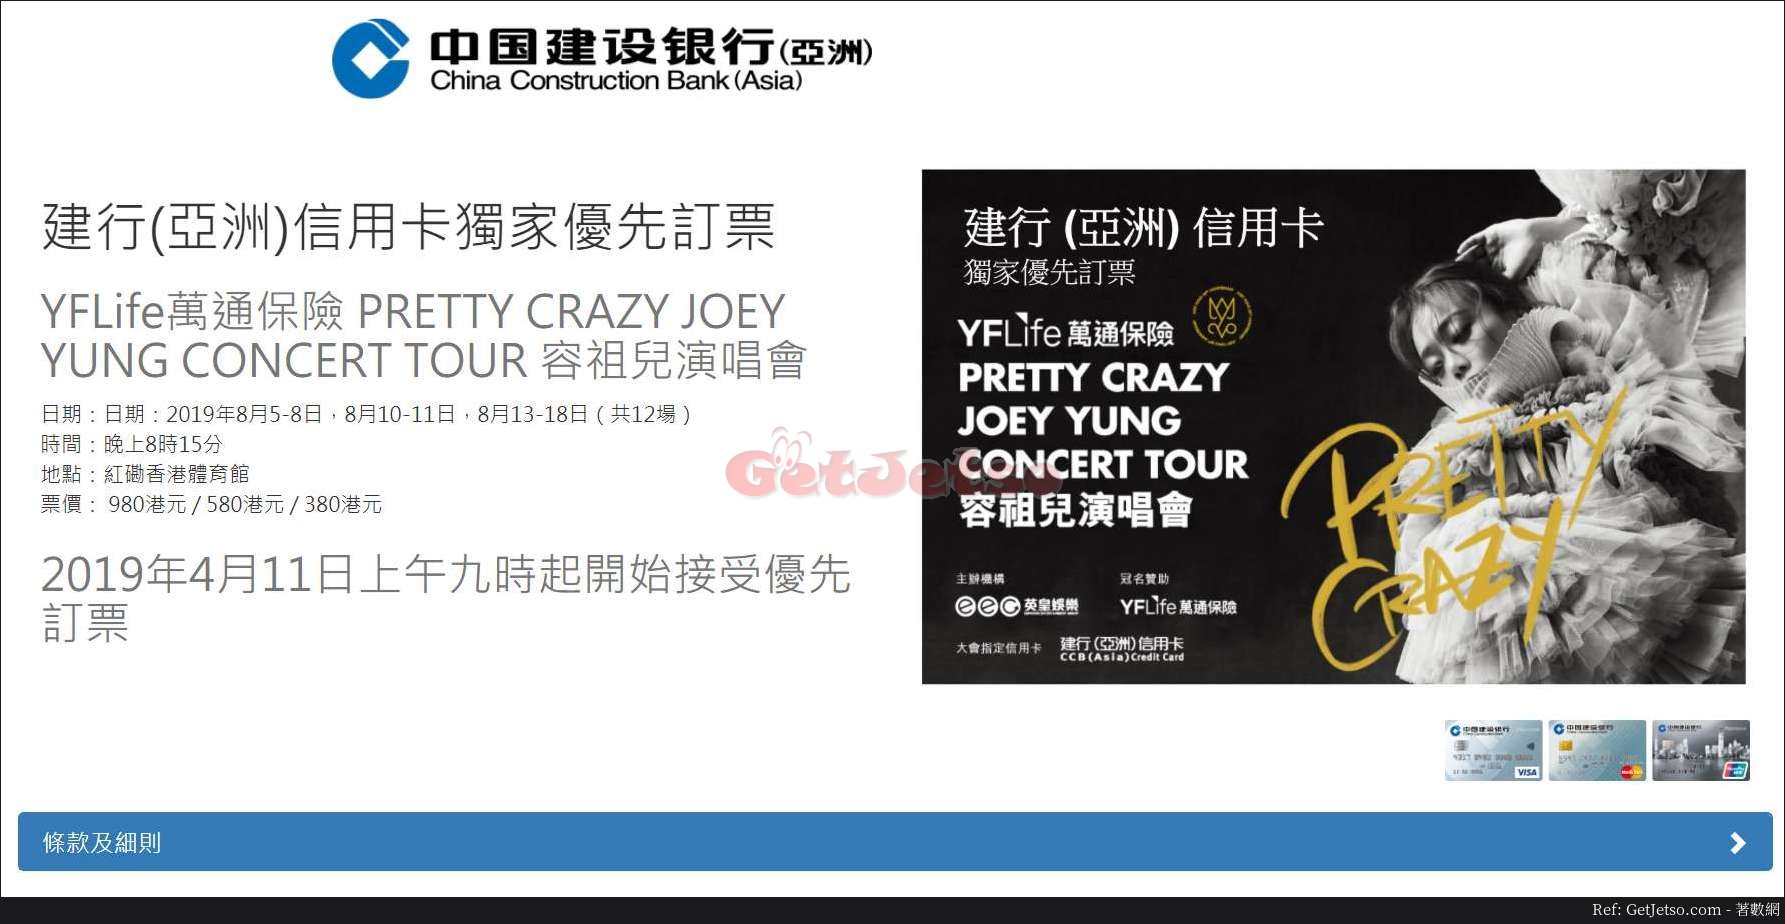 容祖兒演唱會PRETTY CRAZY JOEY YUNG CONCERT TOUR優先訂票優惠@建行信用卡(19年4月11日起)圖片1